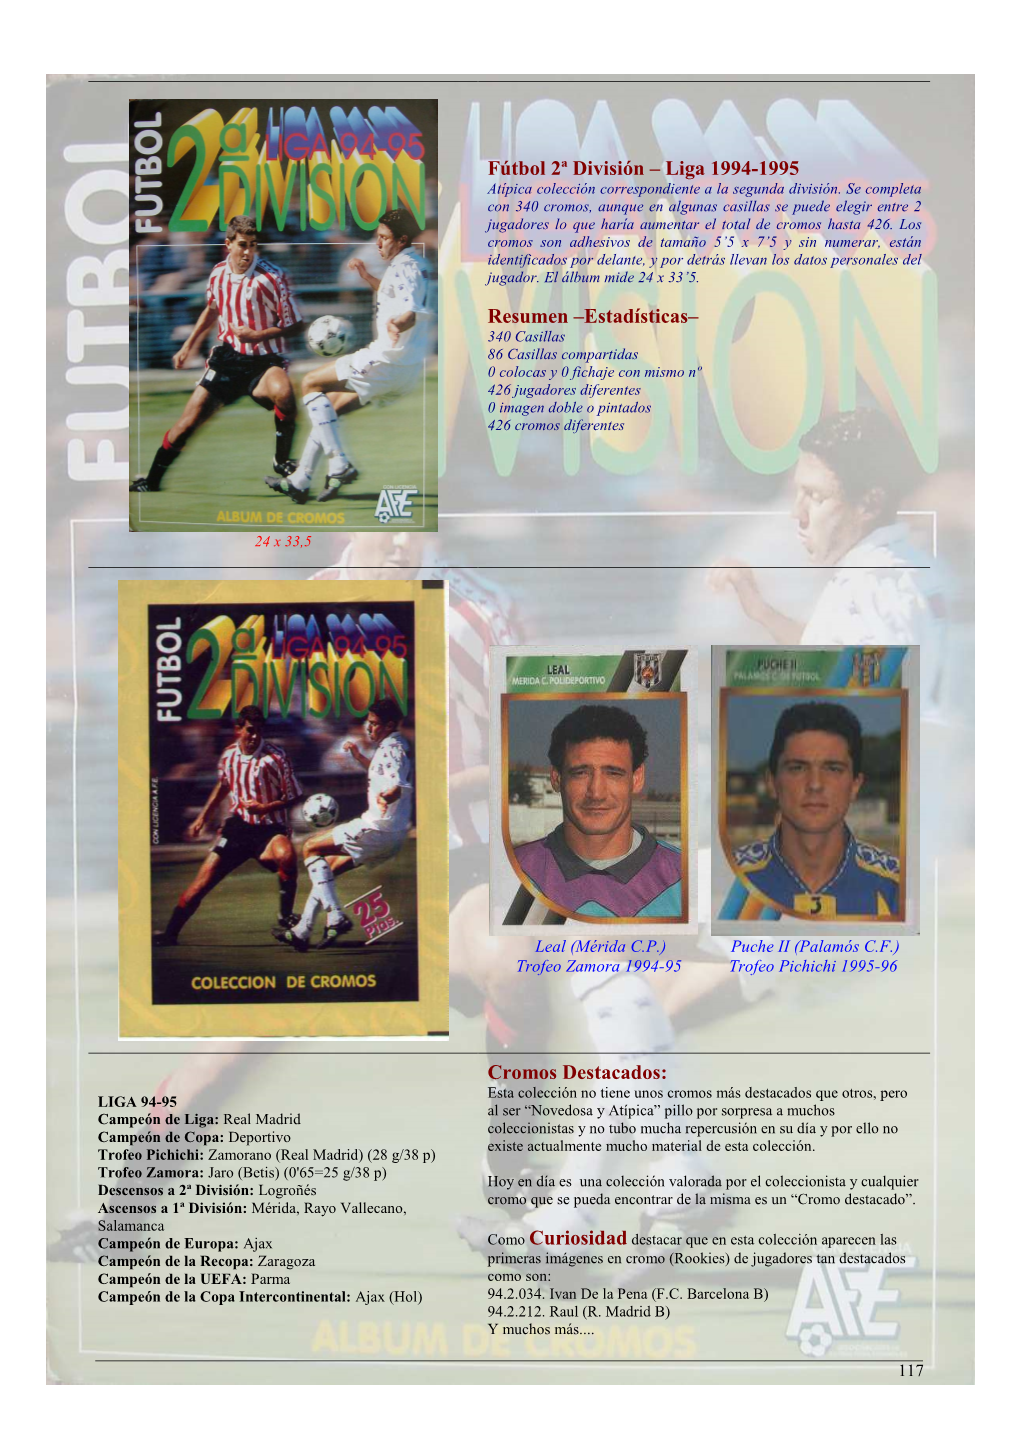 Fútbol 2ª División – Liga 1994-1995 Resumen